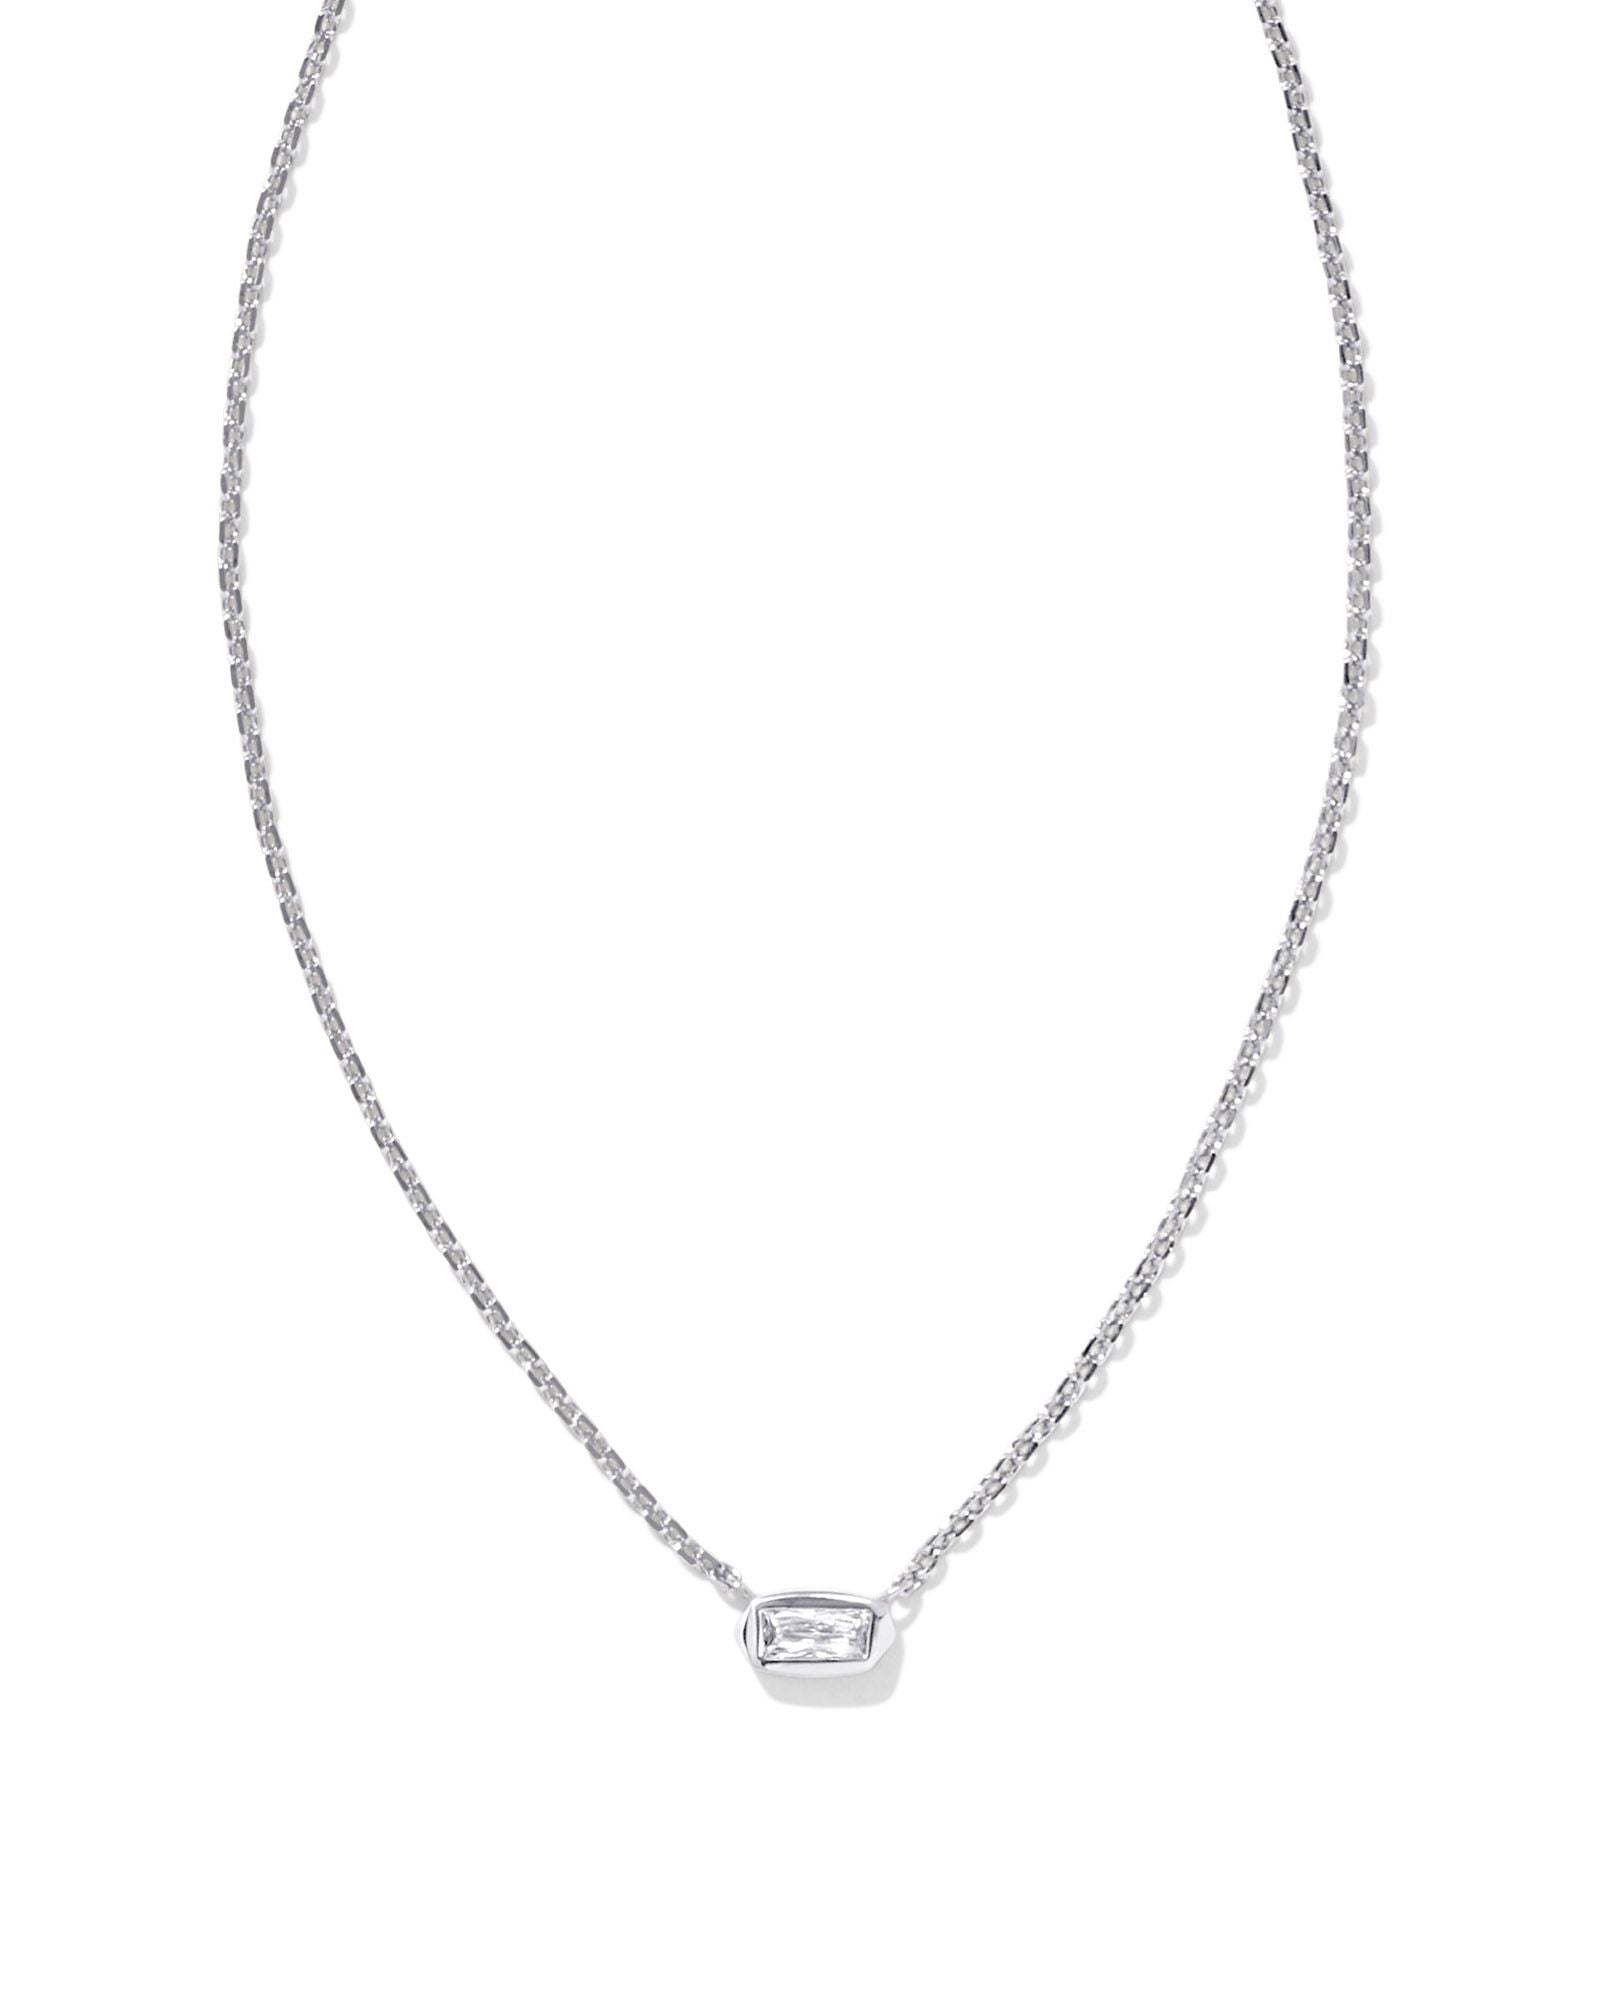 Kendra Scott Fern Crystal Short Pendant Necklace Silver White Crystal-Necklaces-Kendra Scott-N00447RHD-The Twisted Chandelier